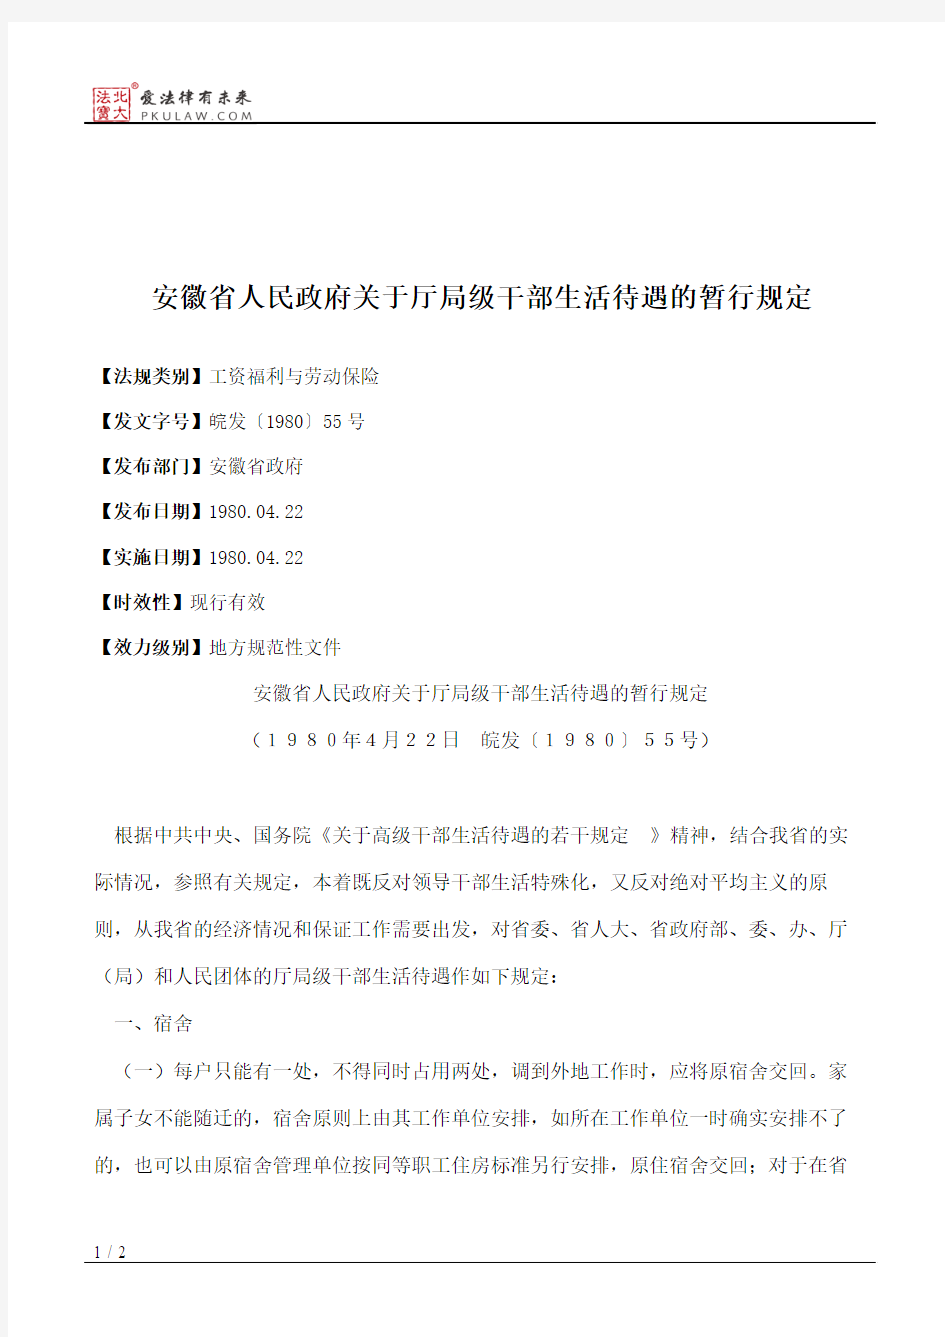 安徽省人民政府关于厅局级干部生活待遇的暂行规定